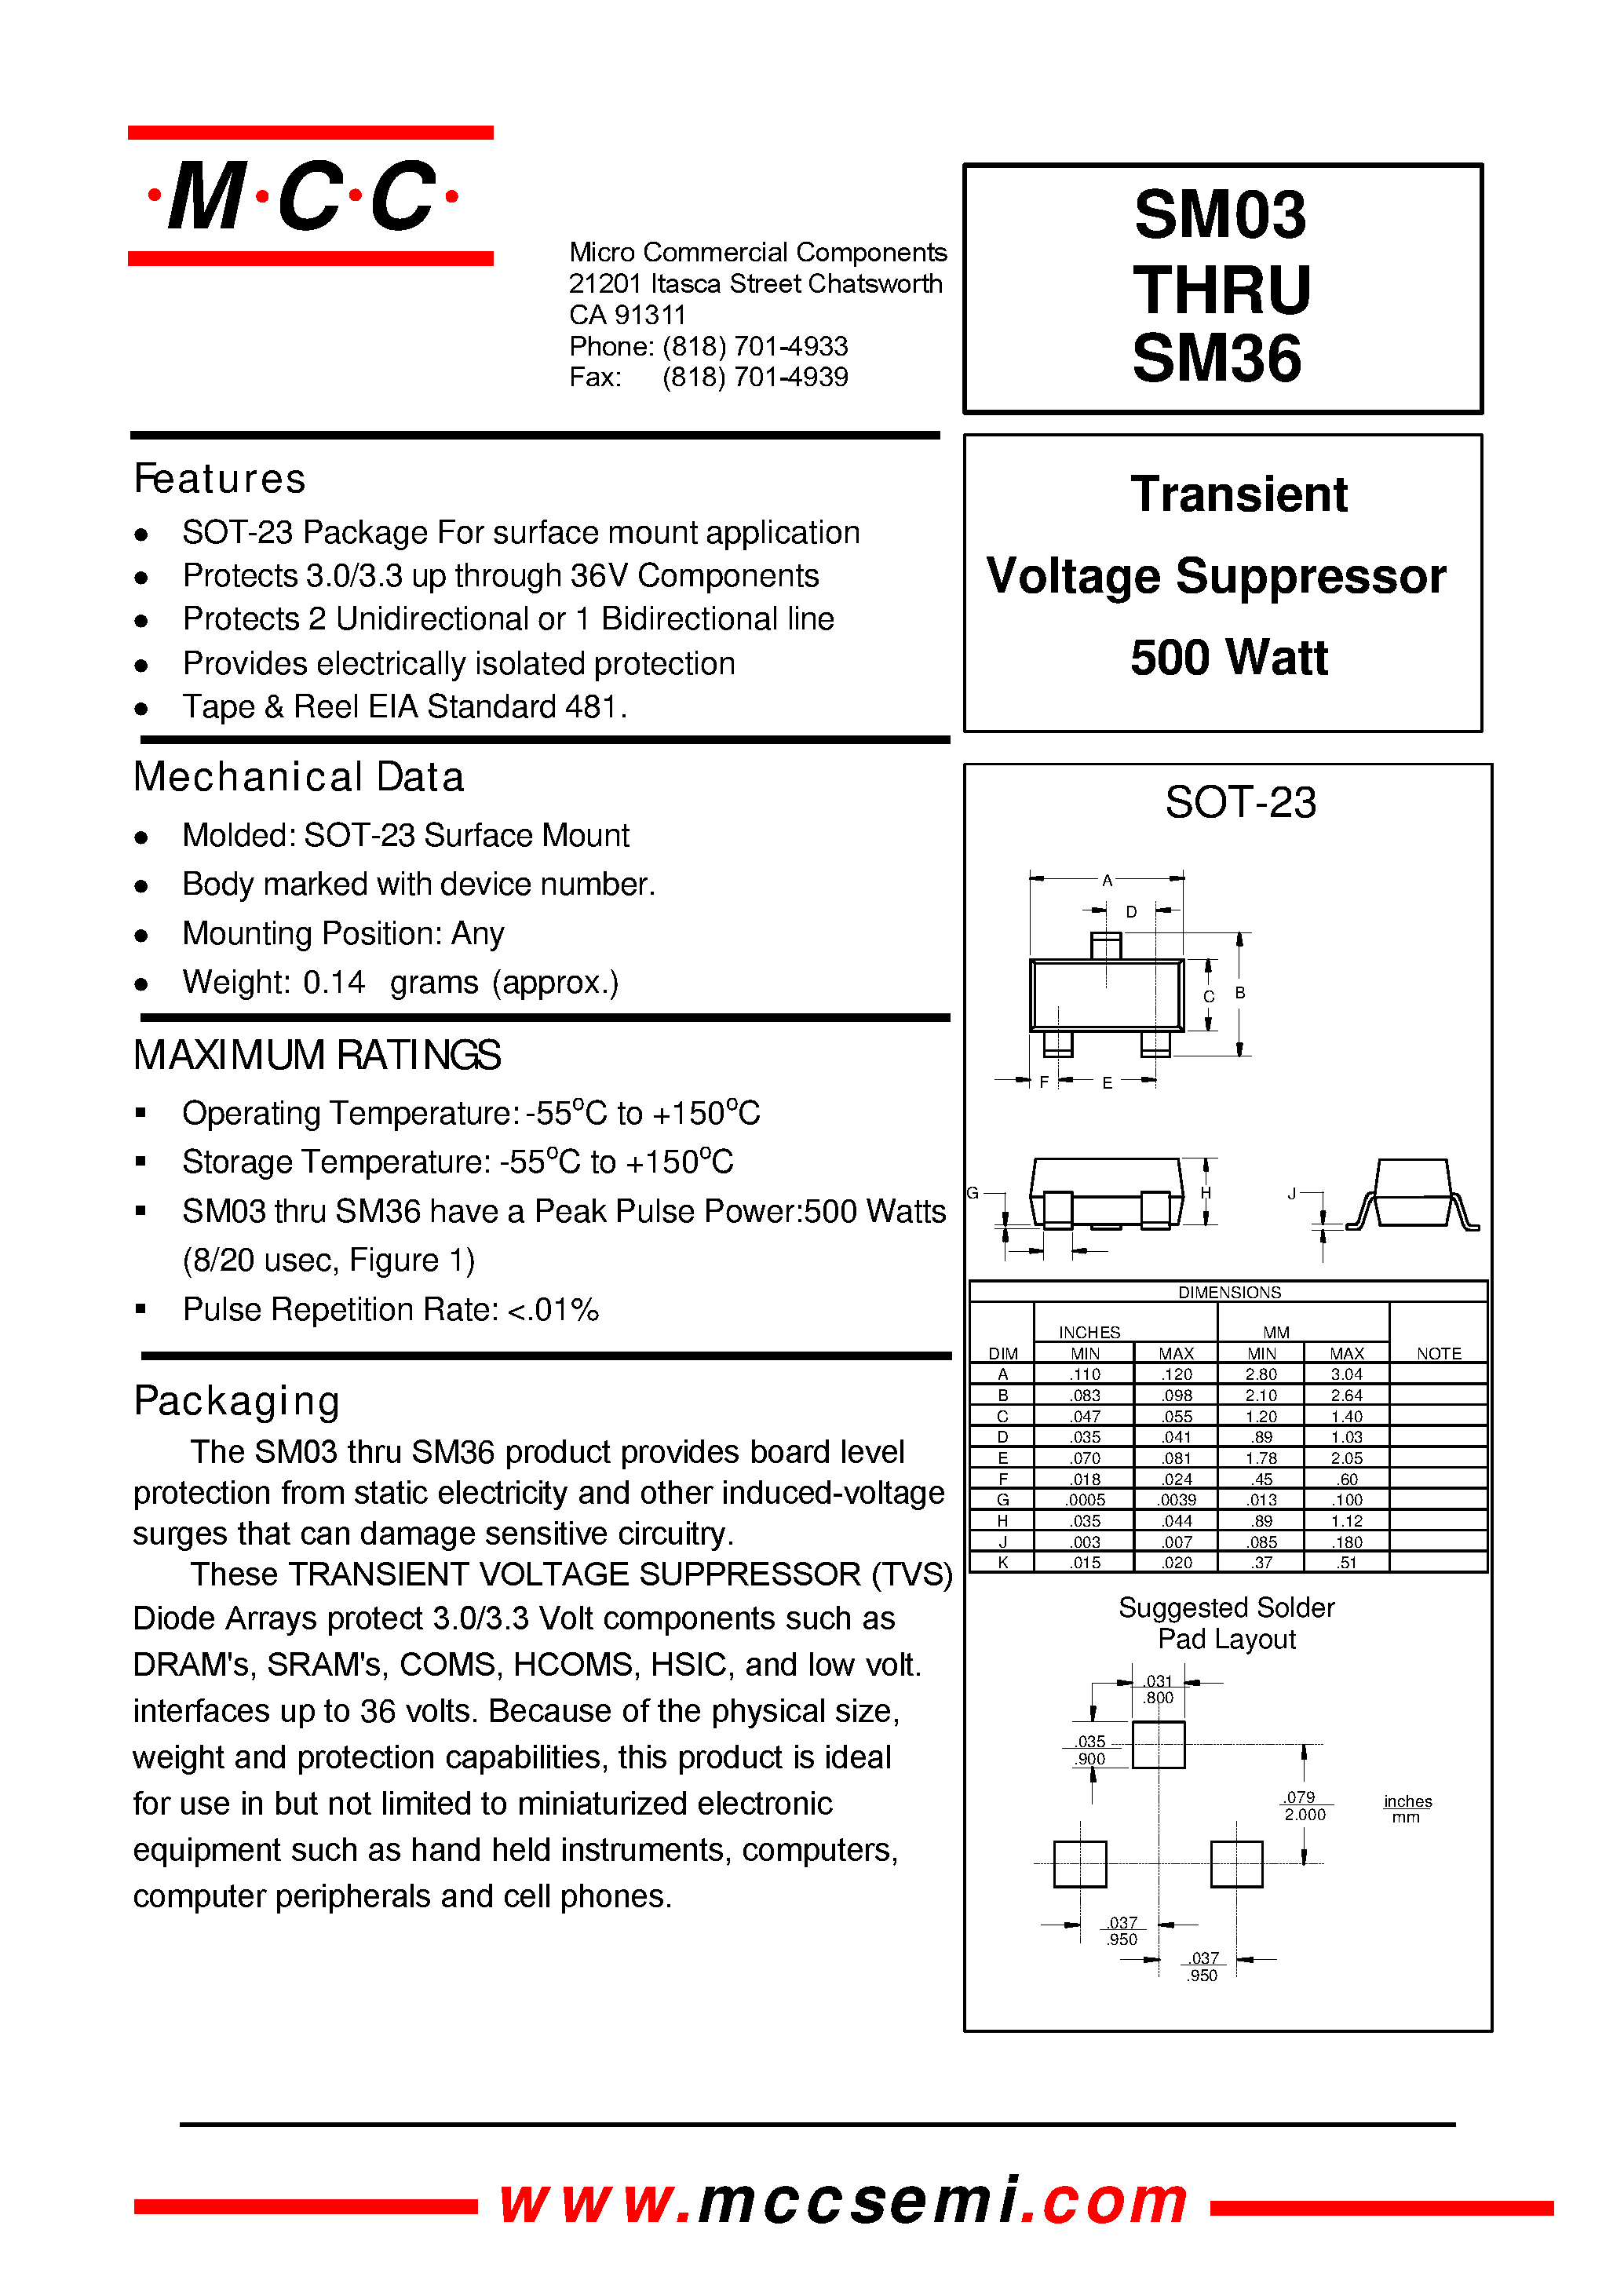 Datasheet SM36 - Transient Voltage Suppressor 500 Watt page 1